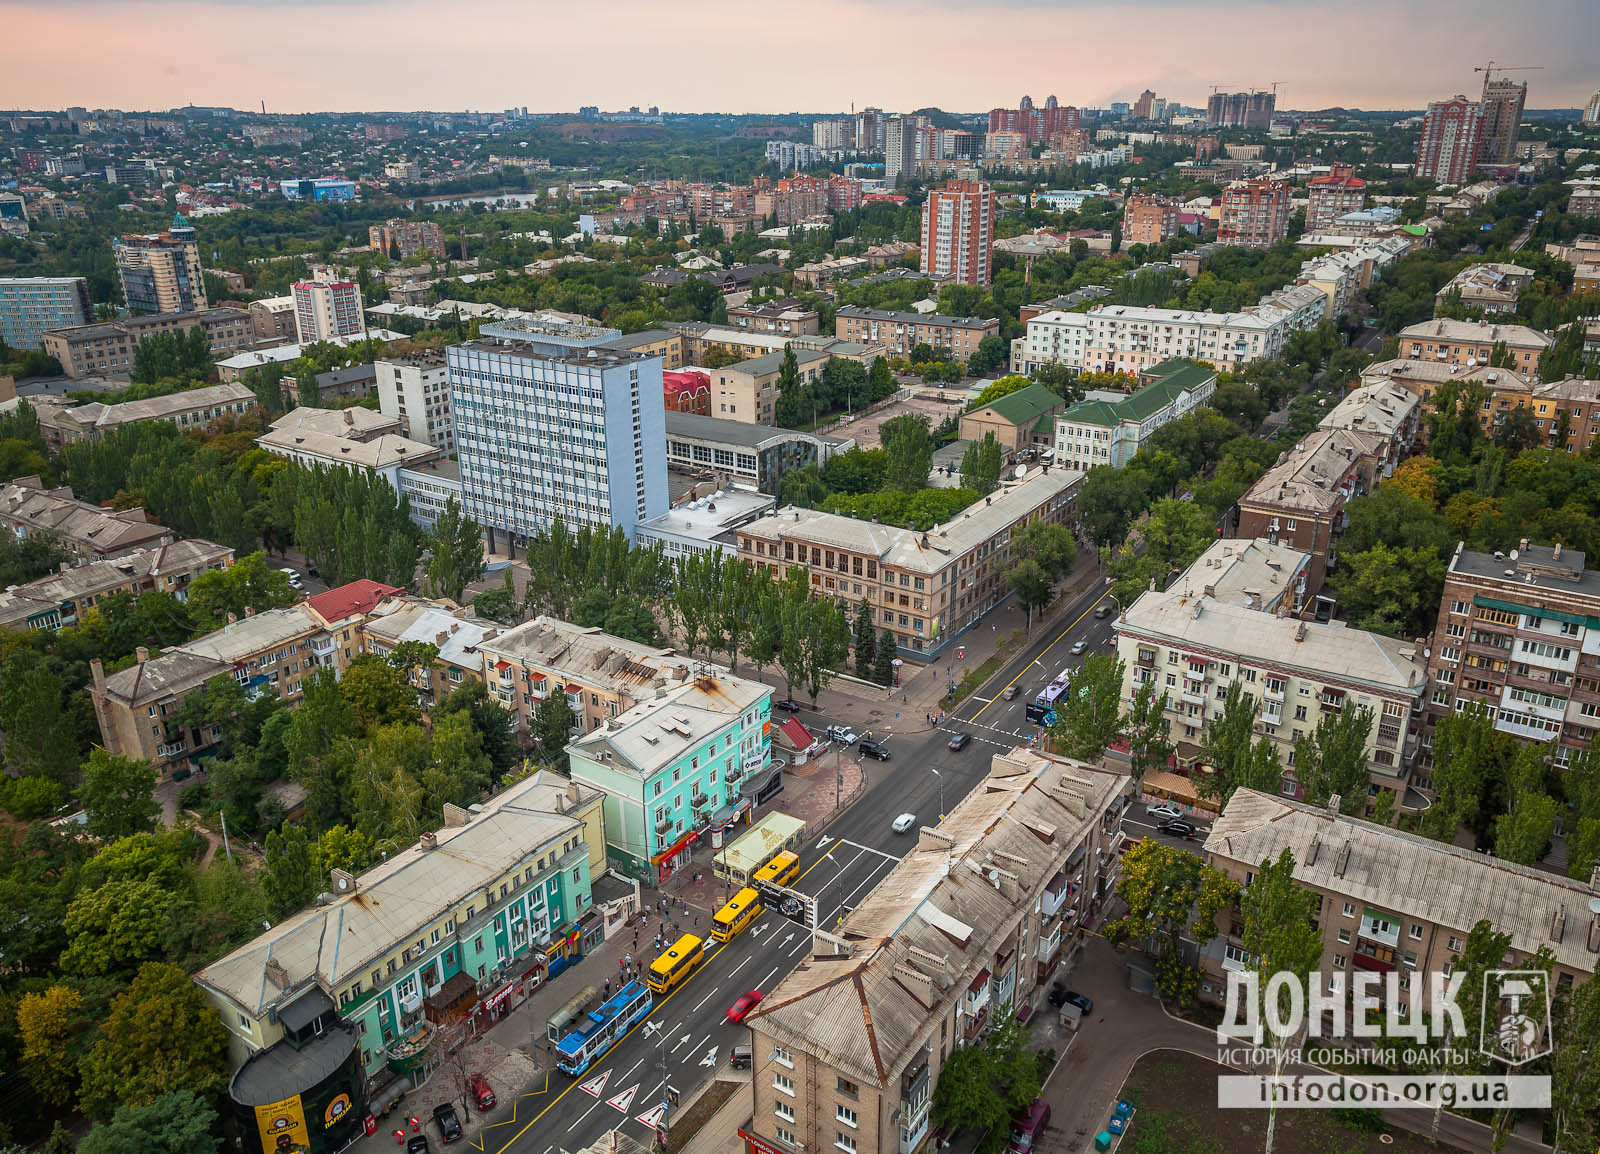 Якщо вдивитися ще далі, то можна виявити і три споруджуваних богатиря нового комплексу біля «Донецьк-Сіті», і вежа самого «Донецьк-Сіті» і навіть БЦ «Північний» на горизонті